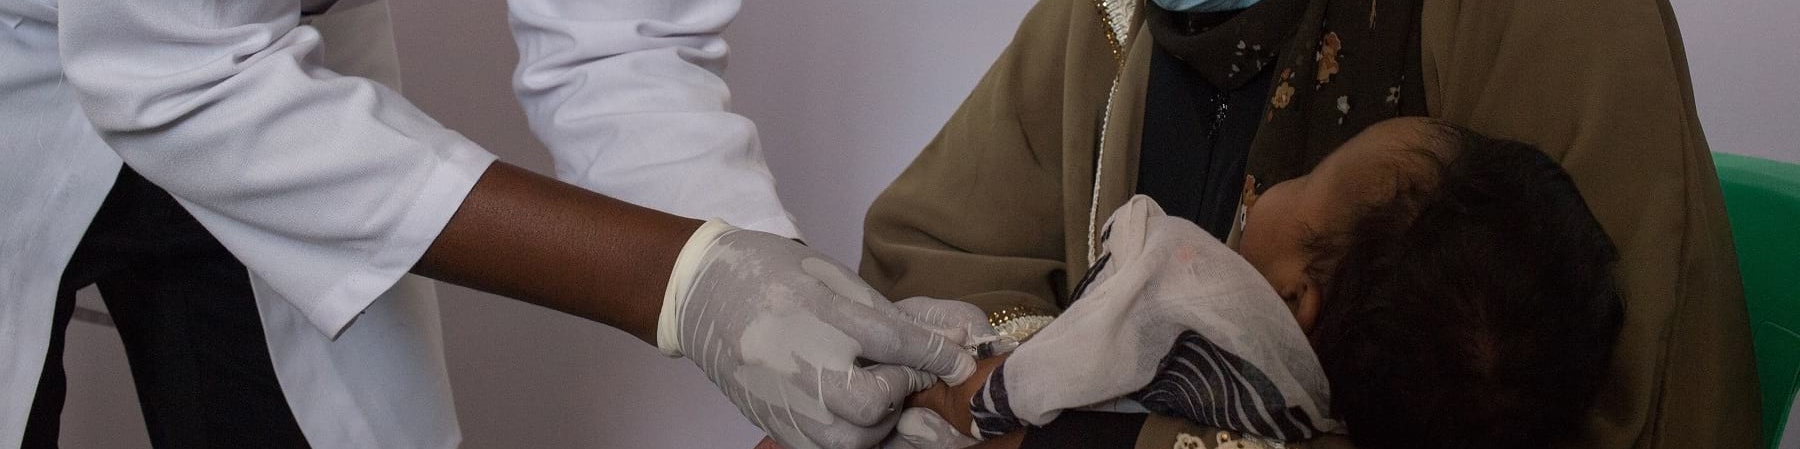 Un operatore save the children con indosso camice e mascherina vaccina un neonato in braccio a sua madre anche lei con maschrina